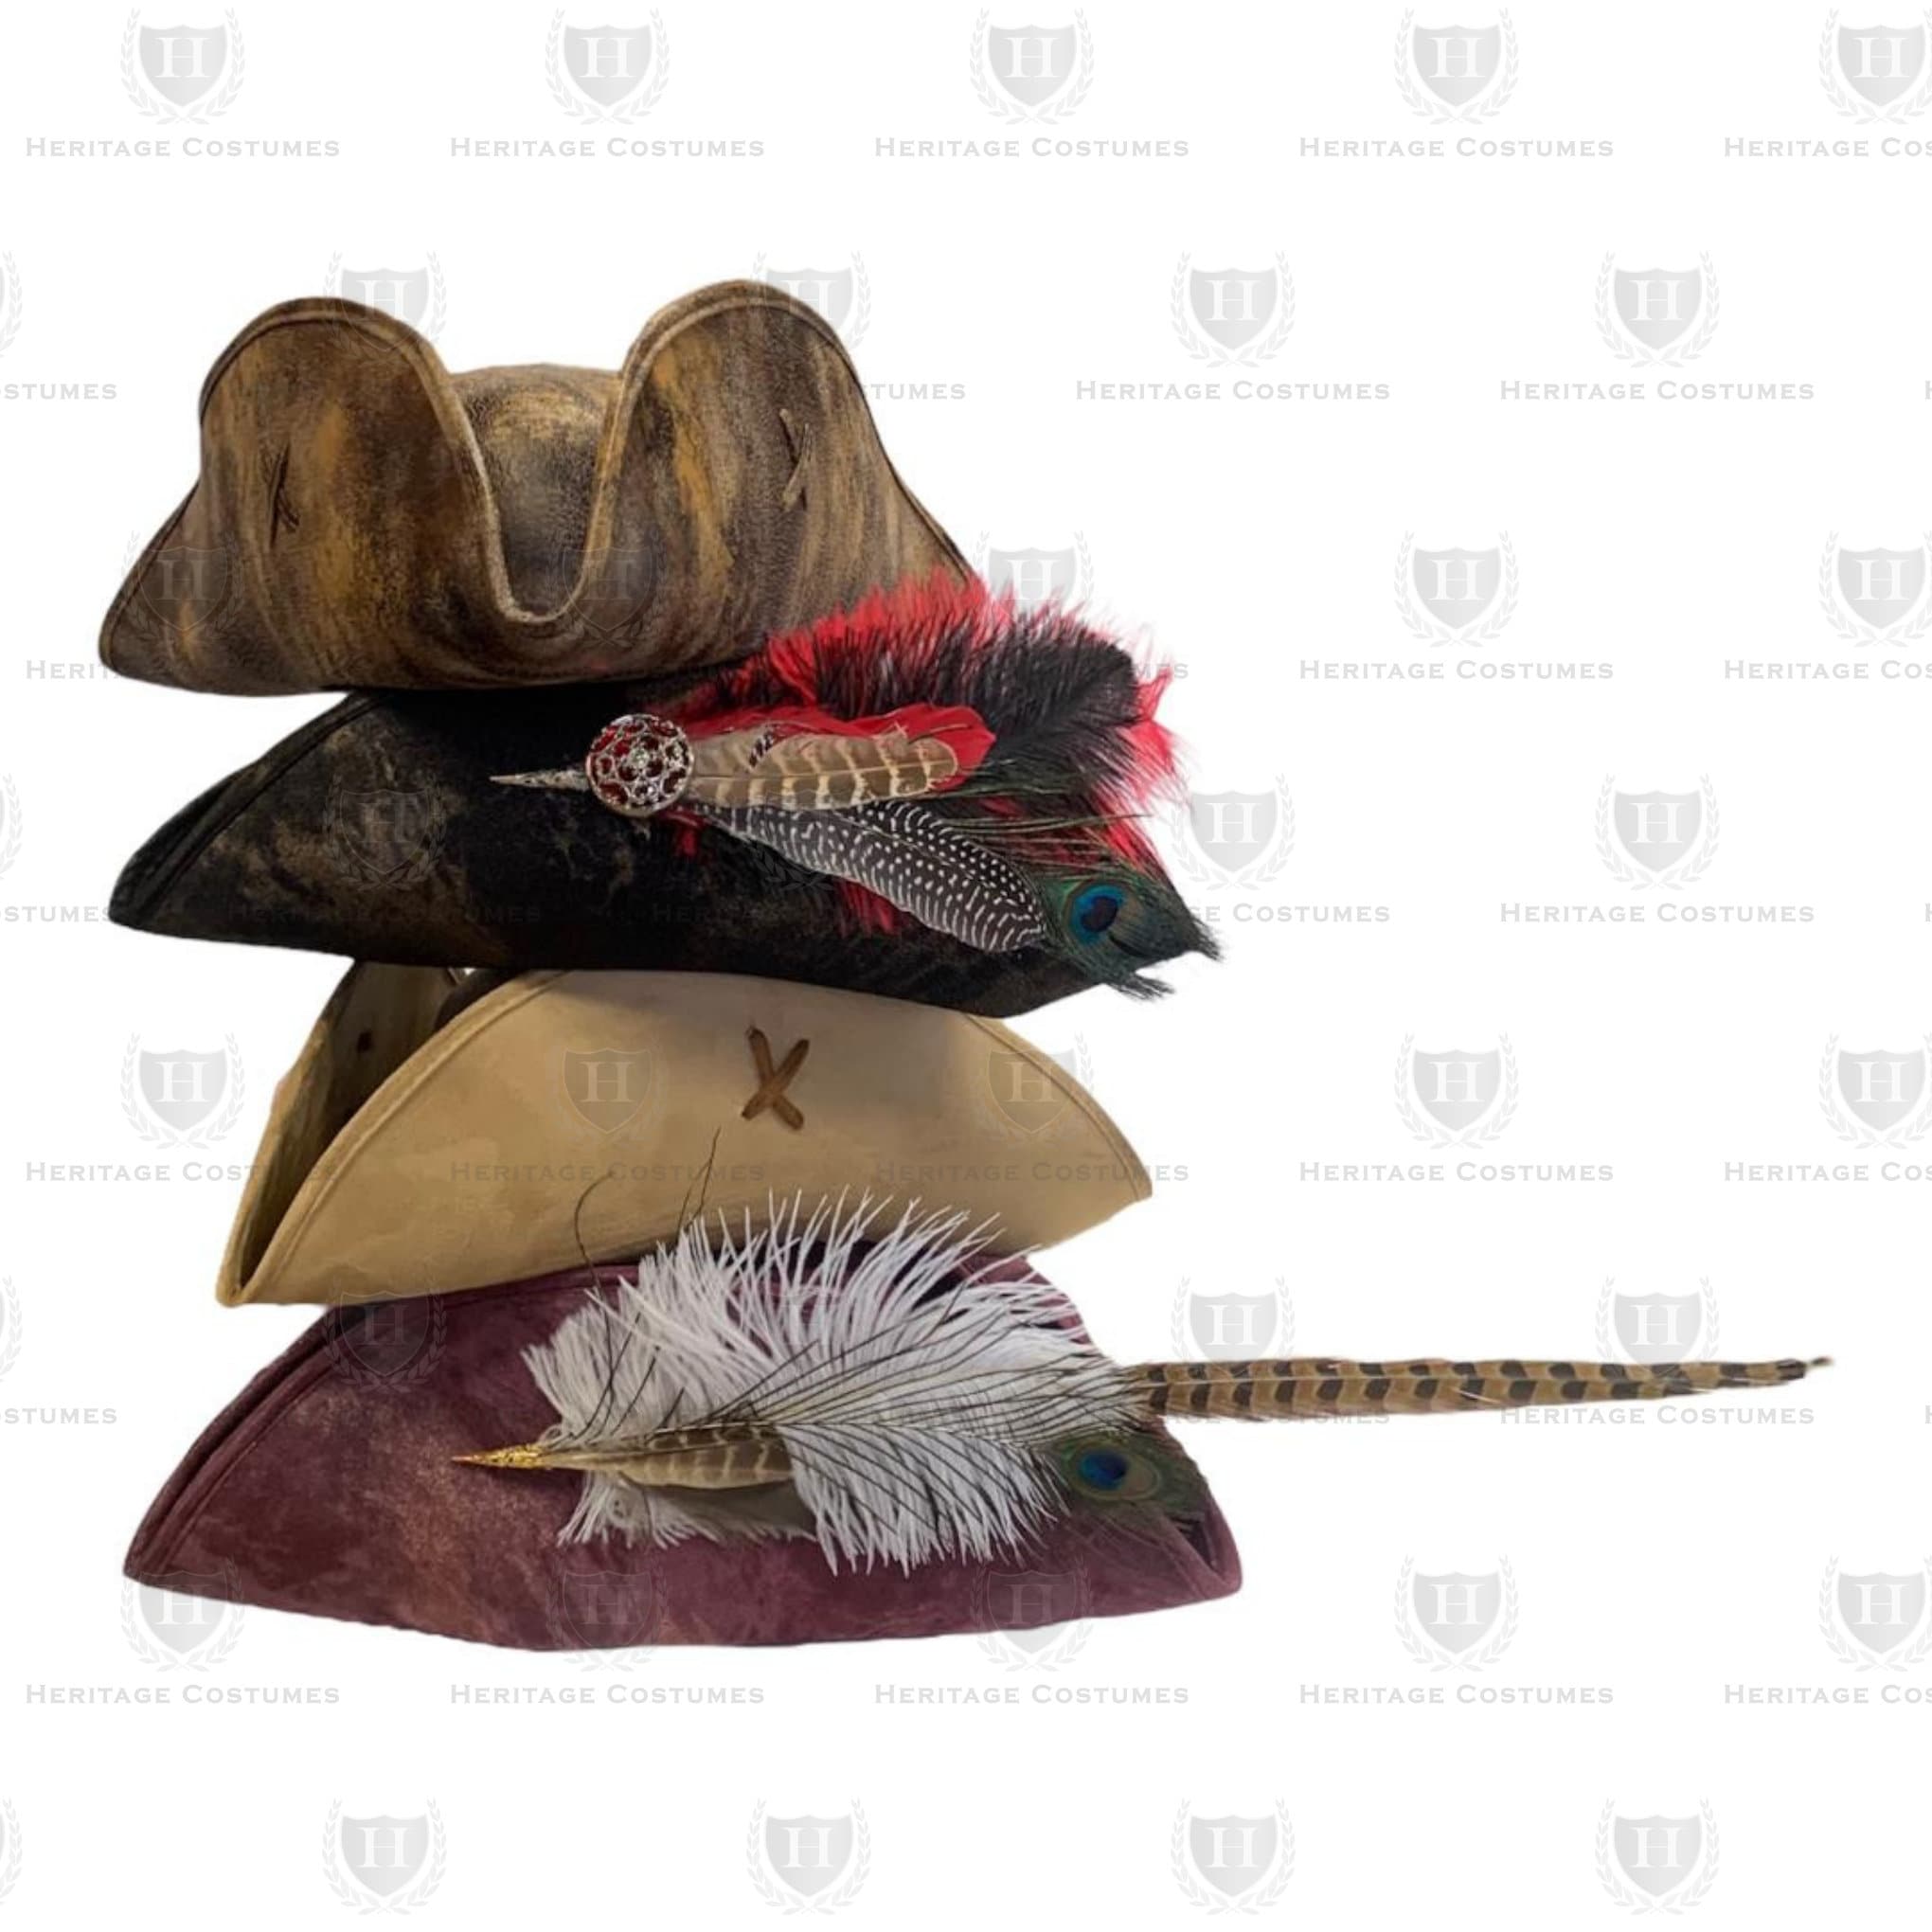 More Swashbuckler Hats